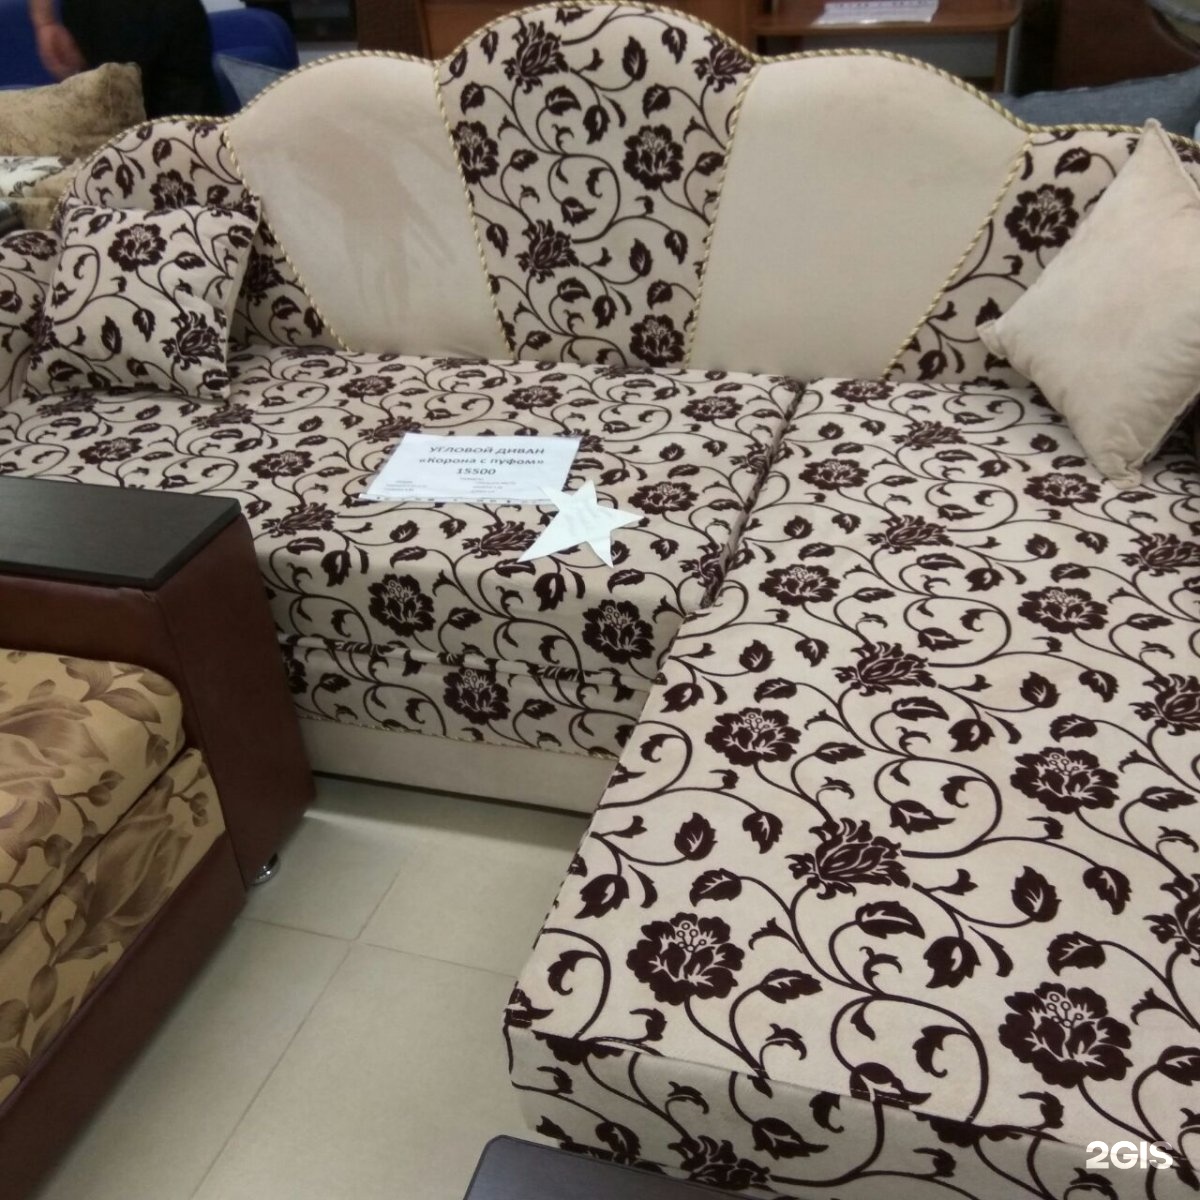 Где В Астрахани Можно Купить Дешевую Мебель